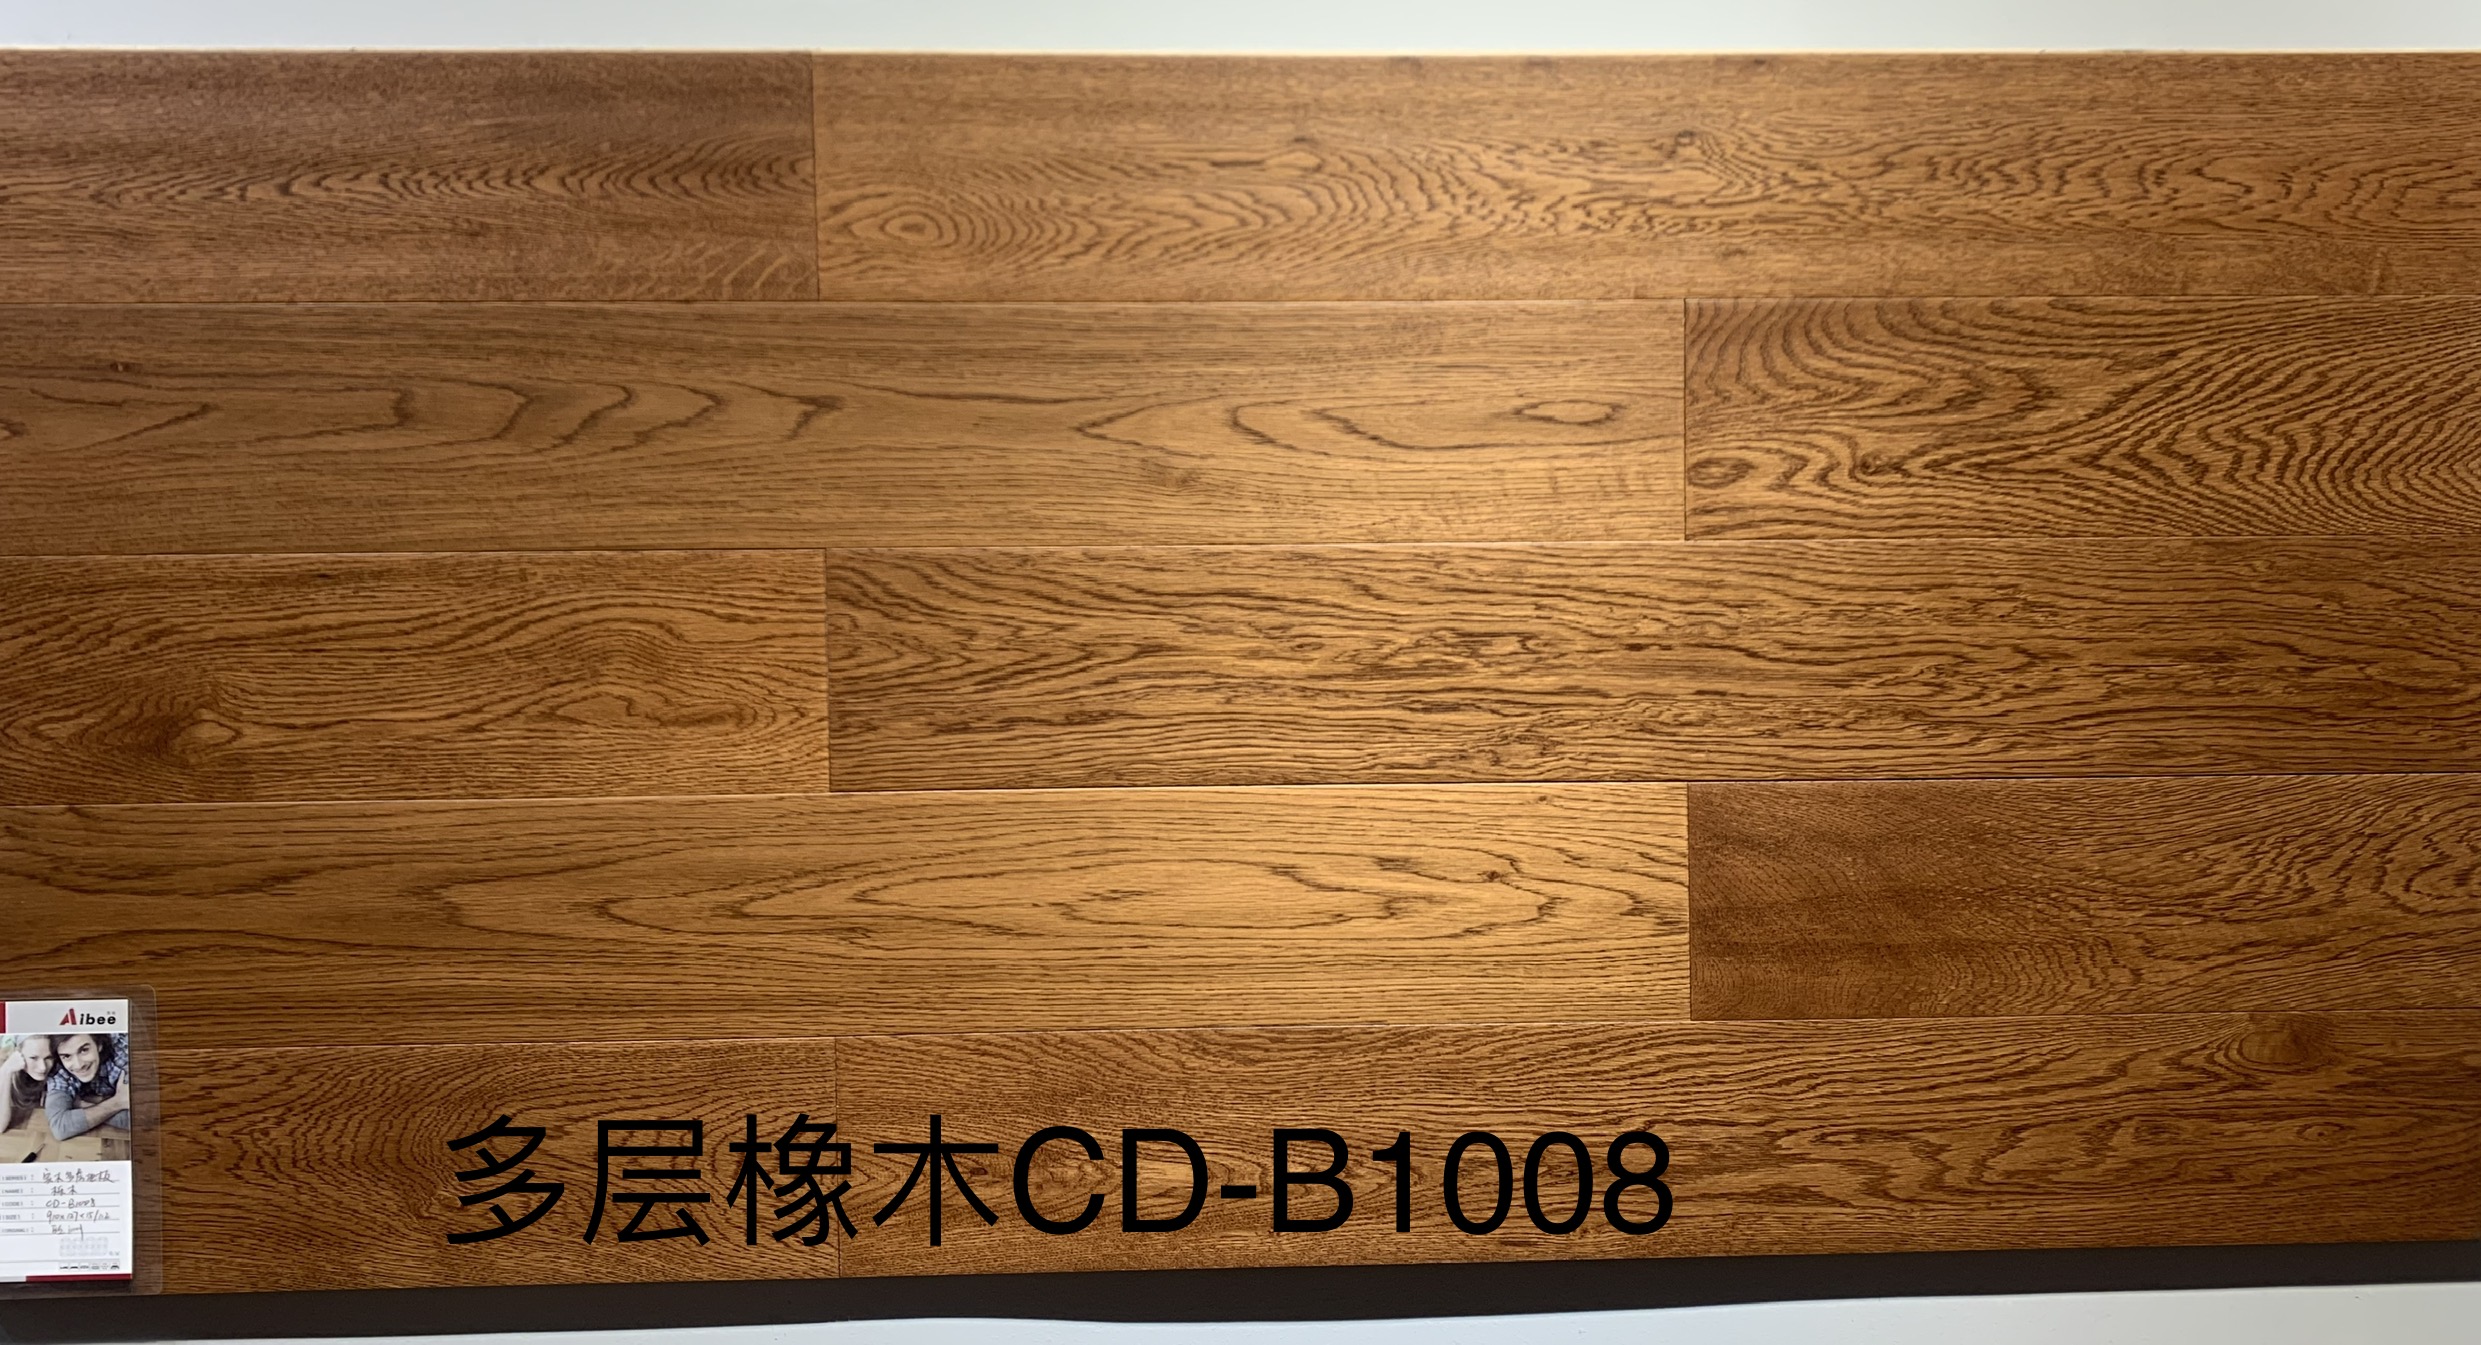 栎木多层CD-B1008